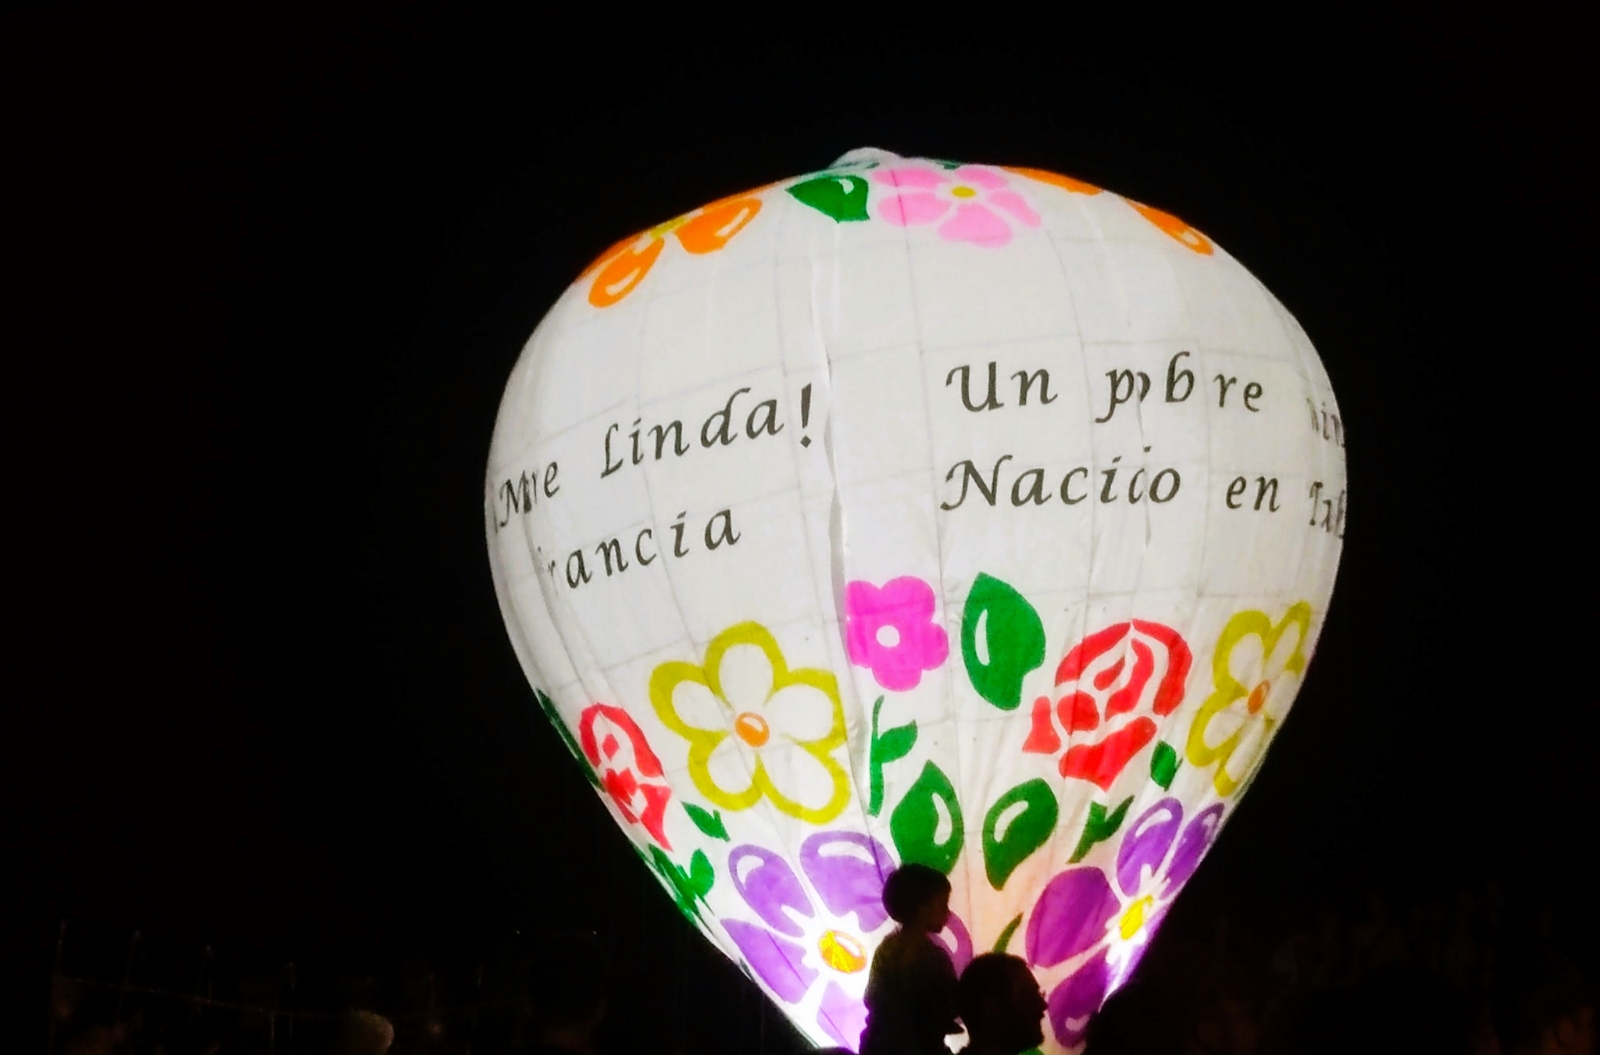 Los globos nocturnos fueron creados por Francisco Javier Cetz y presentados en Francia. Foto: Tomada de Facebook Francisco Javier Cetz